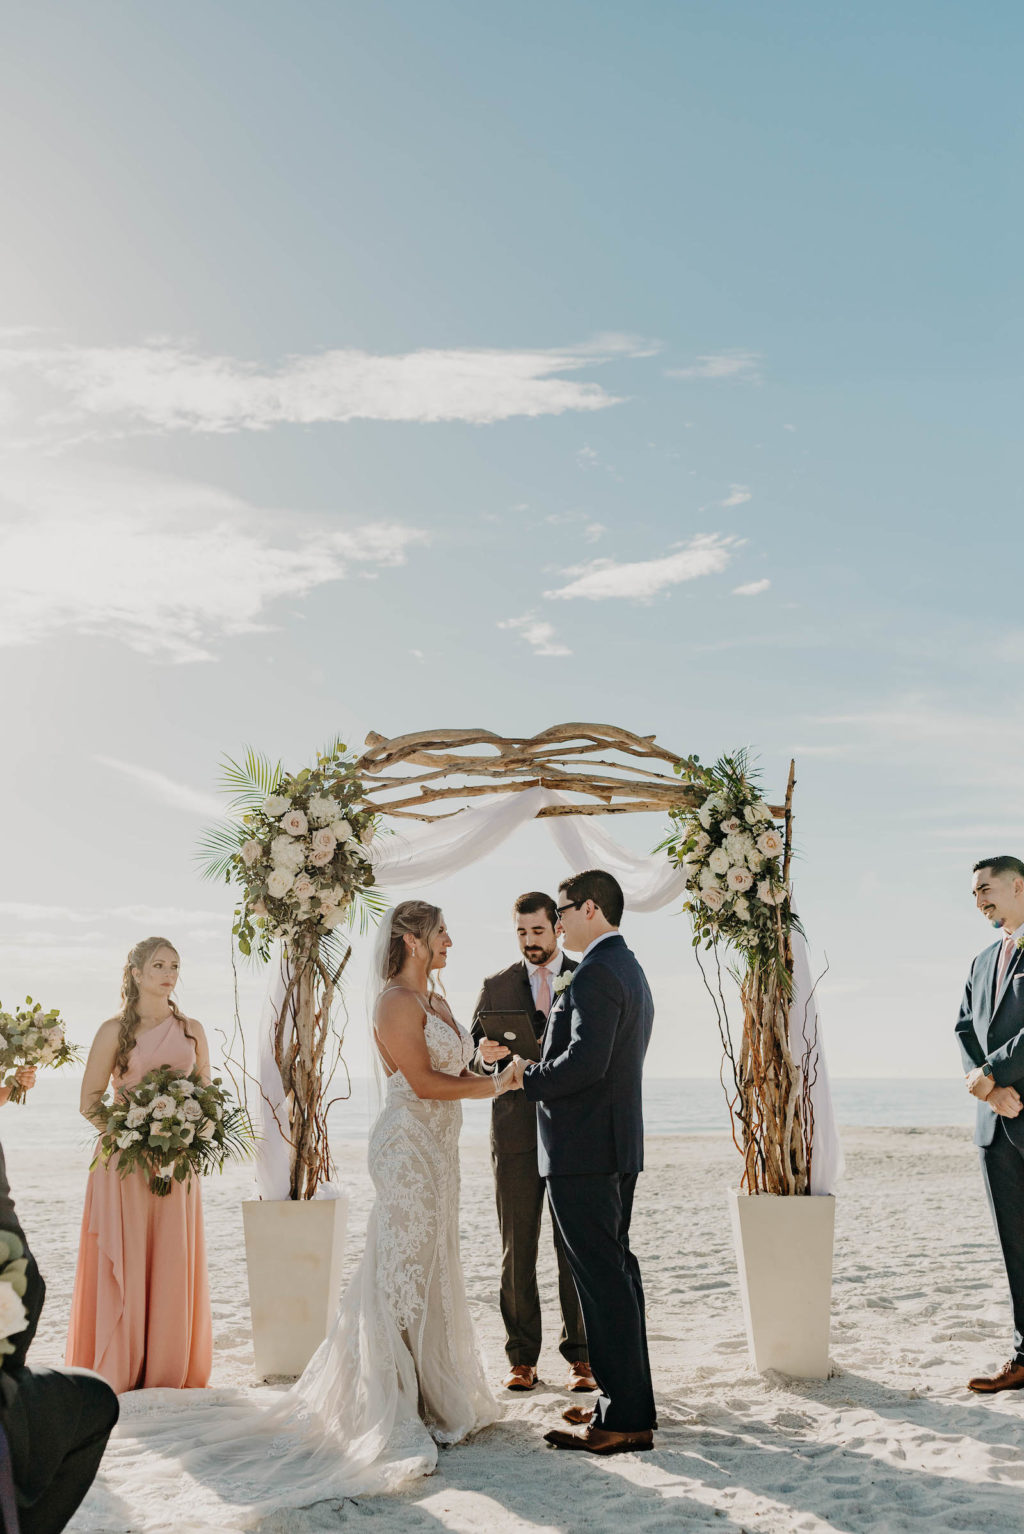 Whimsical Wedding Arch for Beach Wedding | Sarasota Wedding at Longboat Key Club